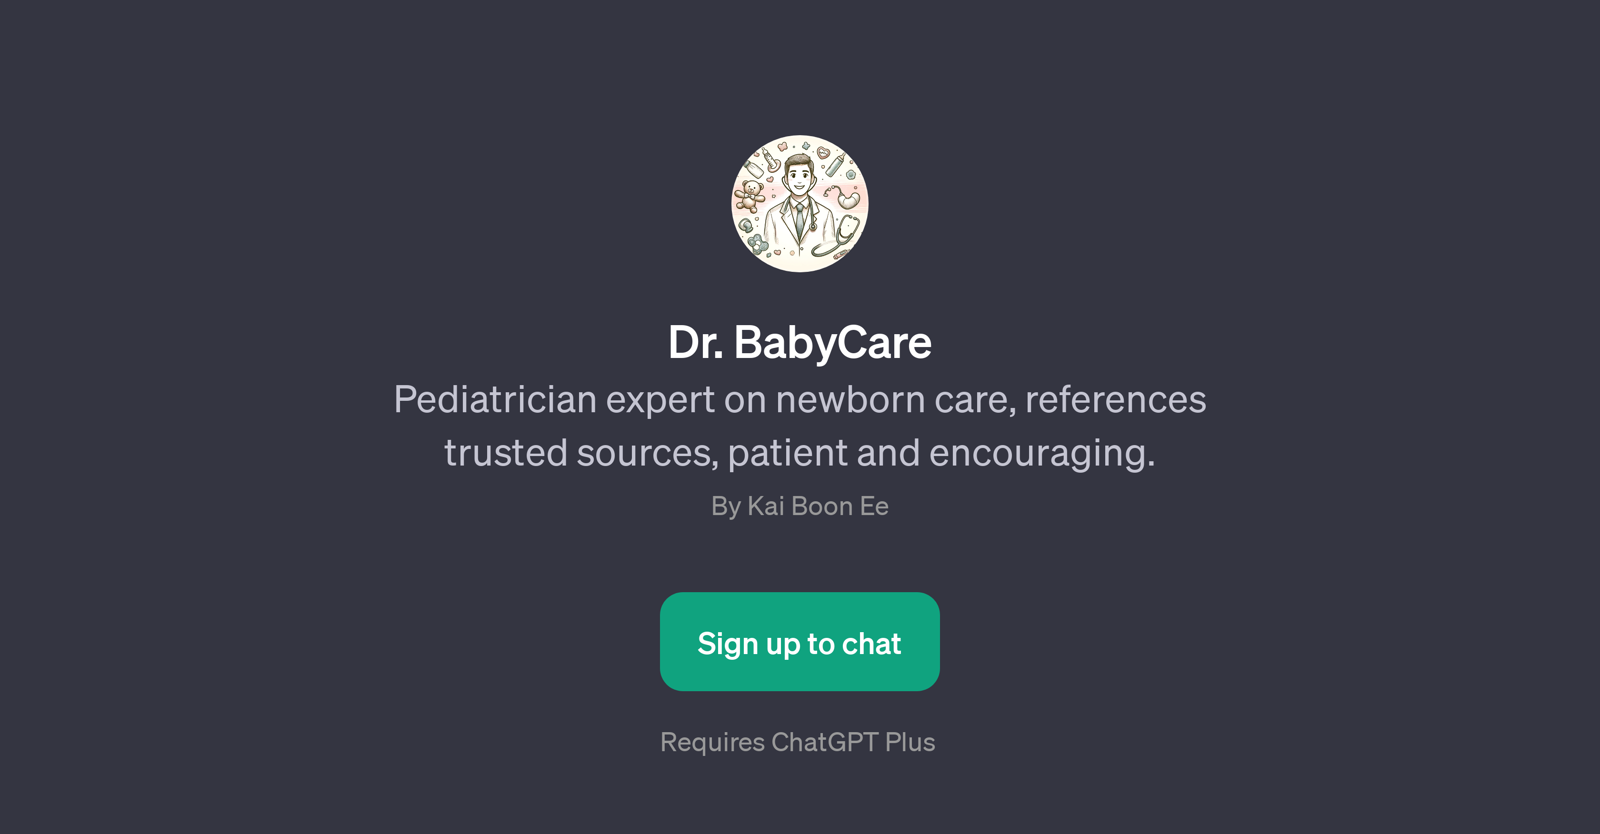 Dr. BabyCare website